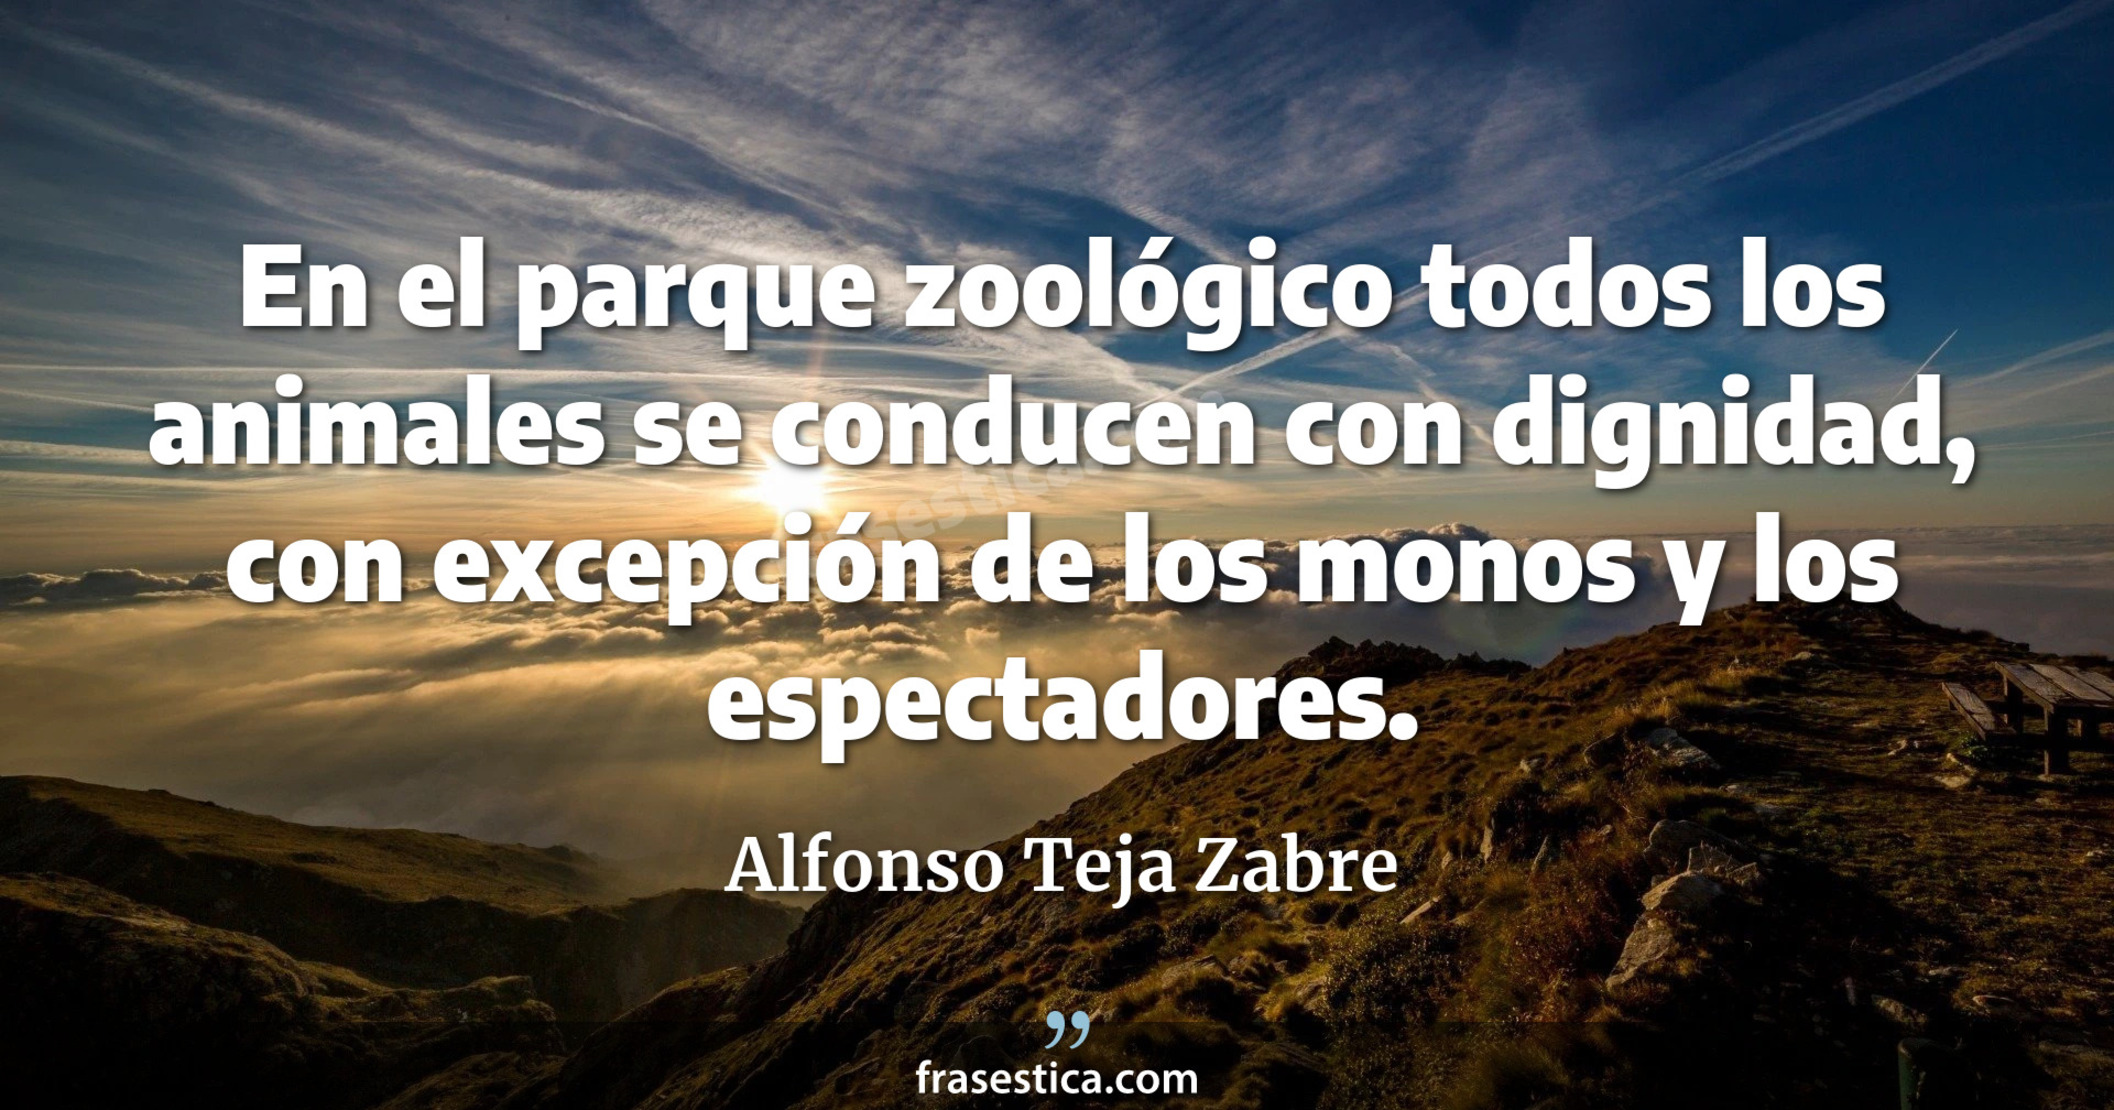 En el parque zoológico todos los animales se conducen con dignidad, con excepción de los monos y los espectadores. - Alfonso Teja Zabre